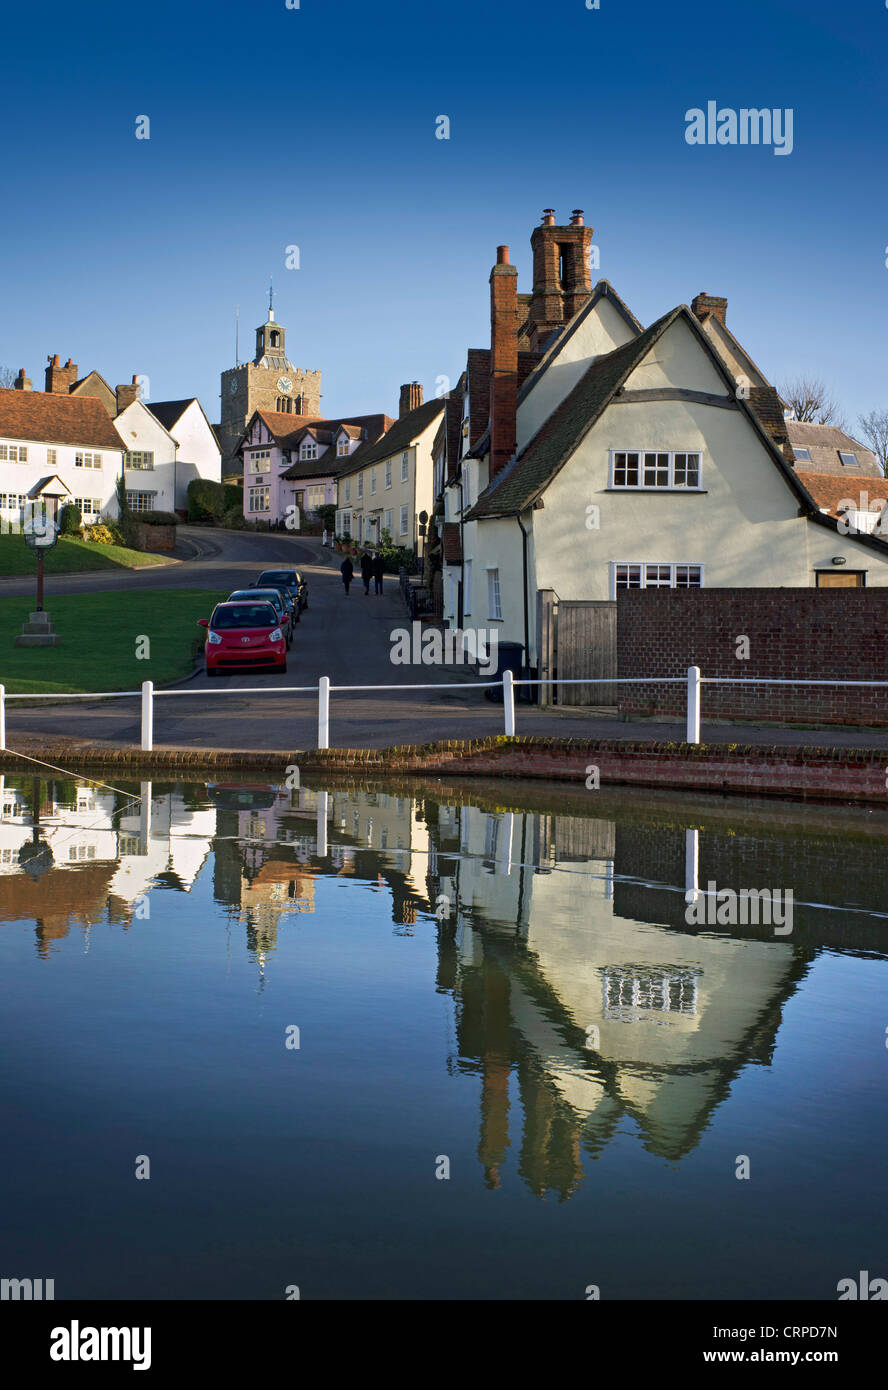 Vue depuis l'étang de la chaussée dans le joli village de Finchingfield décrit comme "le village le plus photographié en Angleterre Banque D'Images